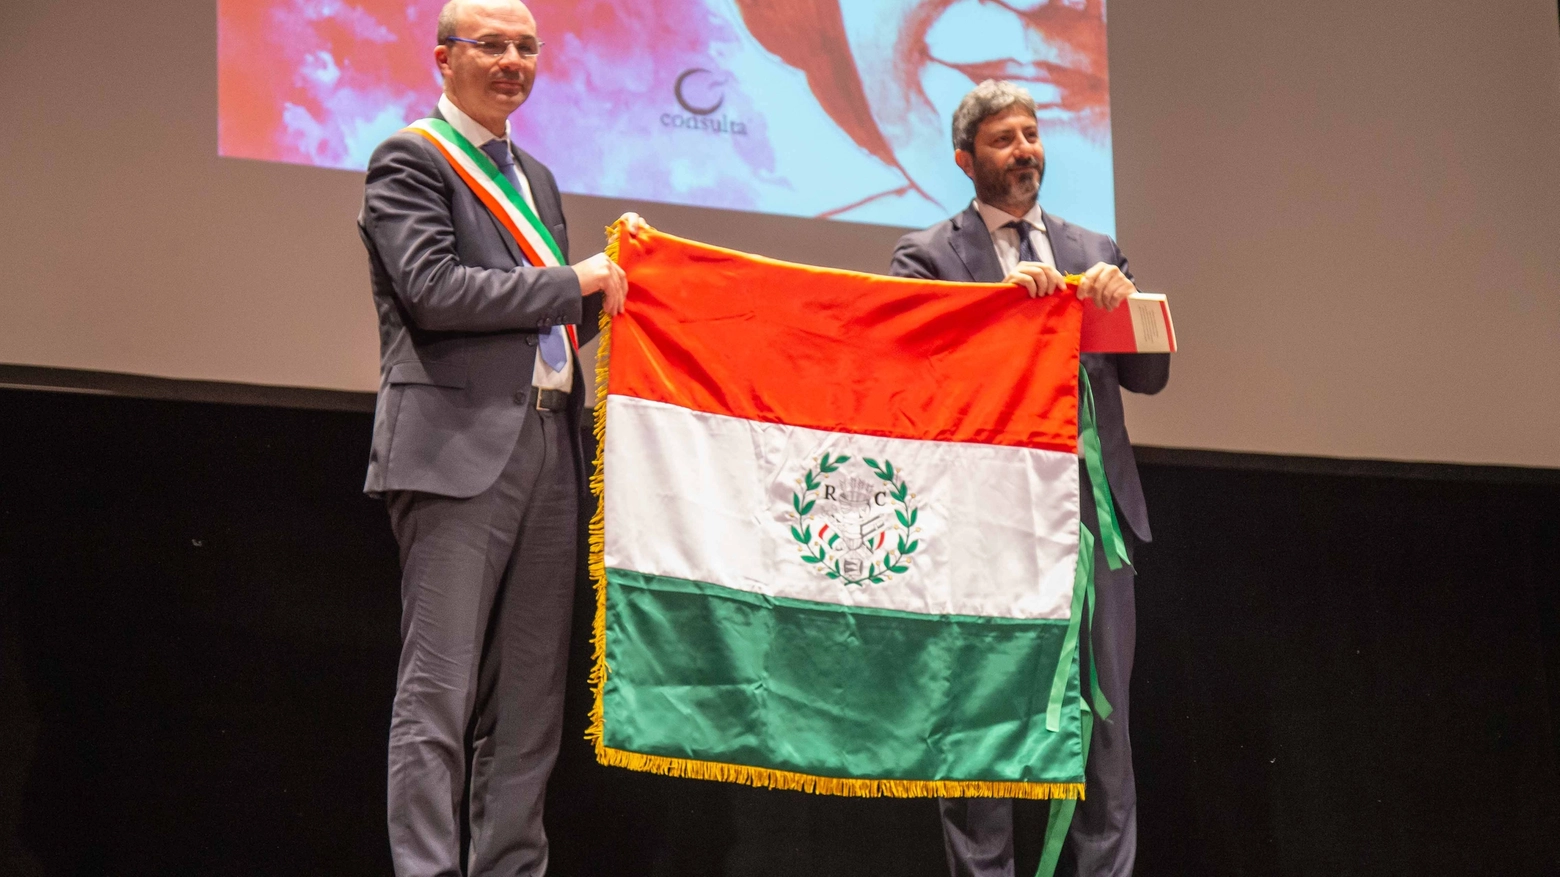 Il presidente della Camera, Roberto Fico riceve il Primo Tricolore dal sindaco Luca Vecchi